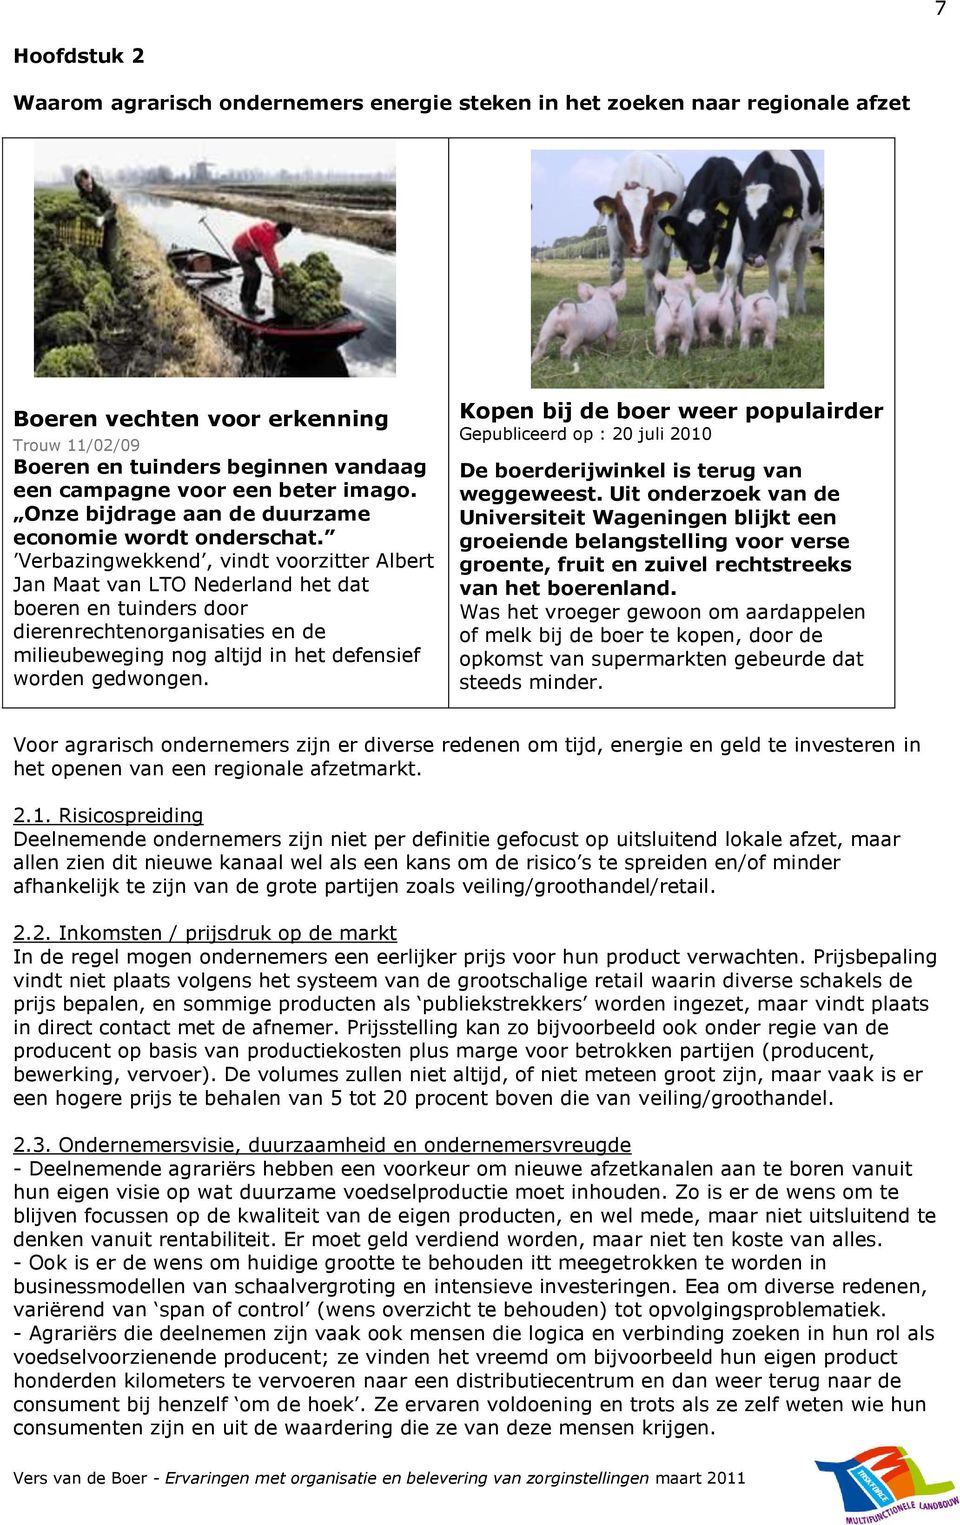 Verbazingwekkend, vindt voorzitter Albert Jan Maat van LTO Nederland het dat boeren en tuinders door dierenrechtenorganisaties en de milieubeweging nog altijd in het defensief worden gedwongen.